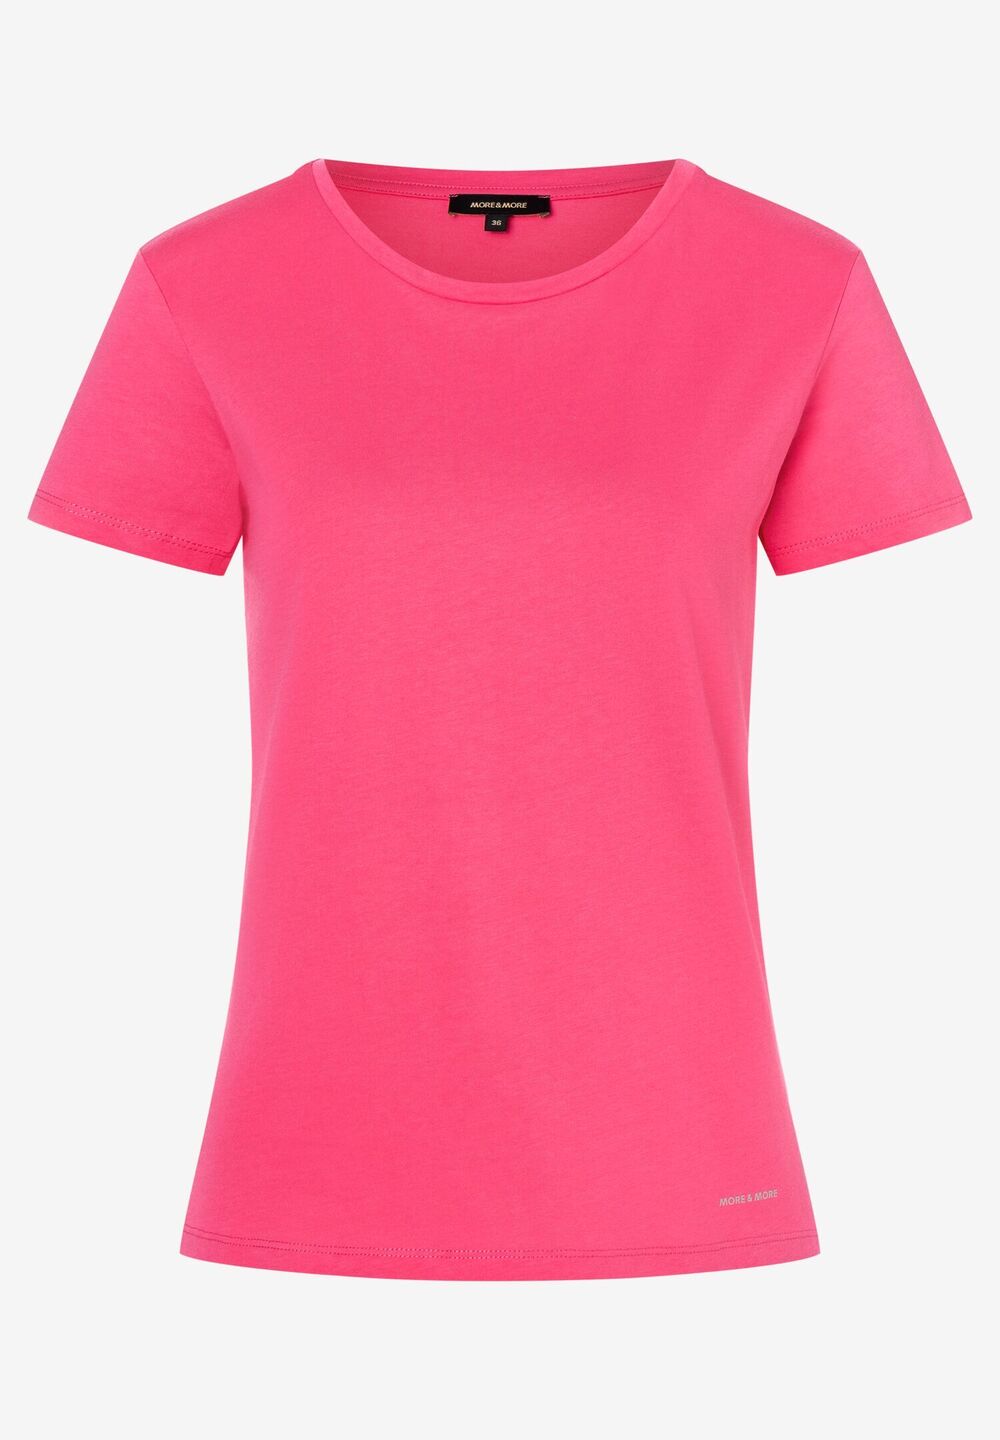 T-Shirt, pinkrose, Frühjahrs-Kollektion, pinkDetailansicht 2